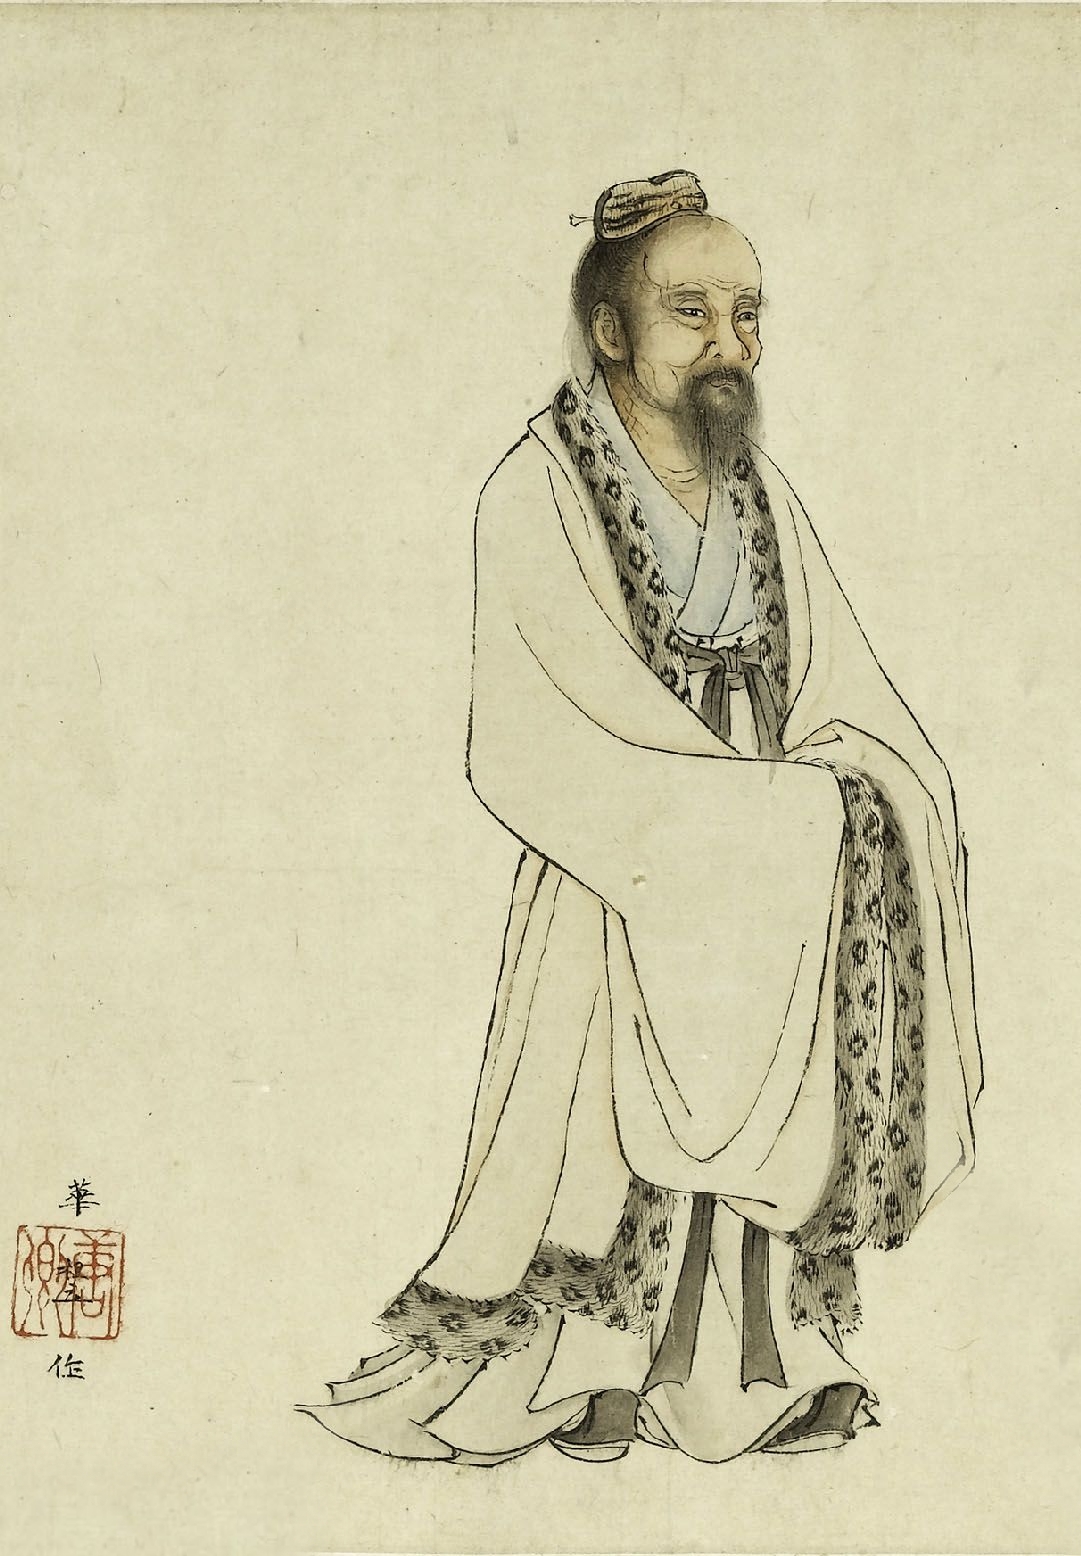 Tranh “Zhuangzi From the Book of Ten Sons” (Trang Tử trong Thập Tử Thư) của tác giả Hoa Tổ Lập (Hua Zuli) triều nhà Nguyên. (Ảnh: Tư liệu công cộng)